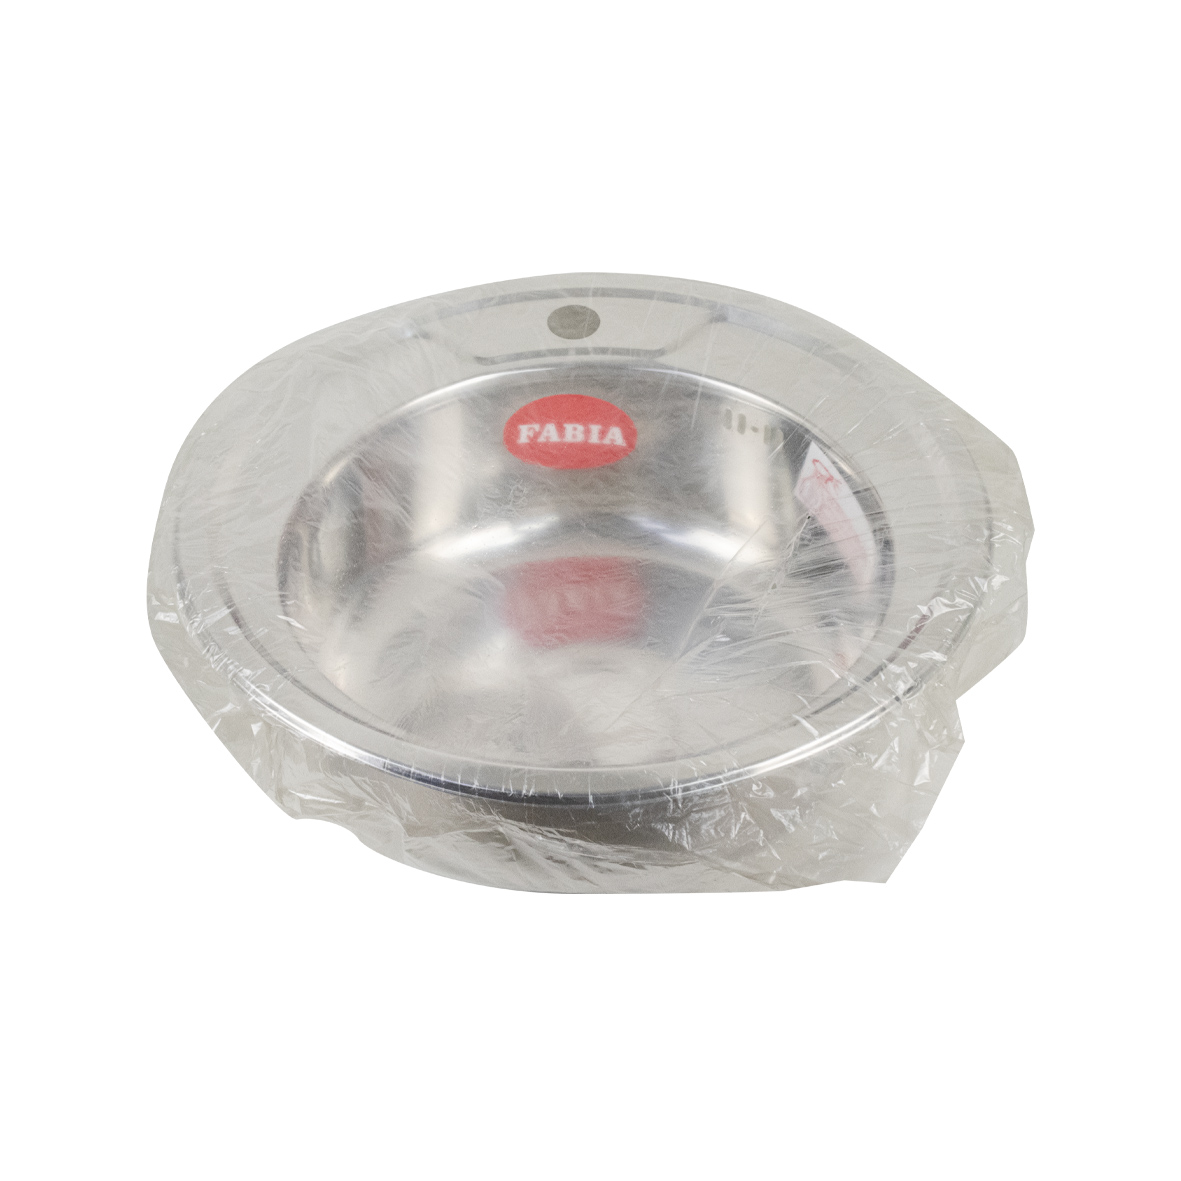 FABIA - Мойка врезная круглая, d = 49 см, из нержавеющей стали, толщина 0,4 мм, глубина 160 мм, без крепежей, с сифоном